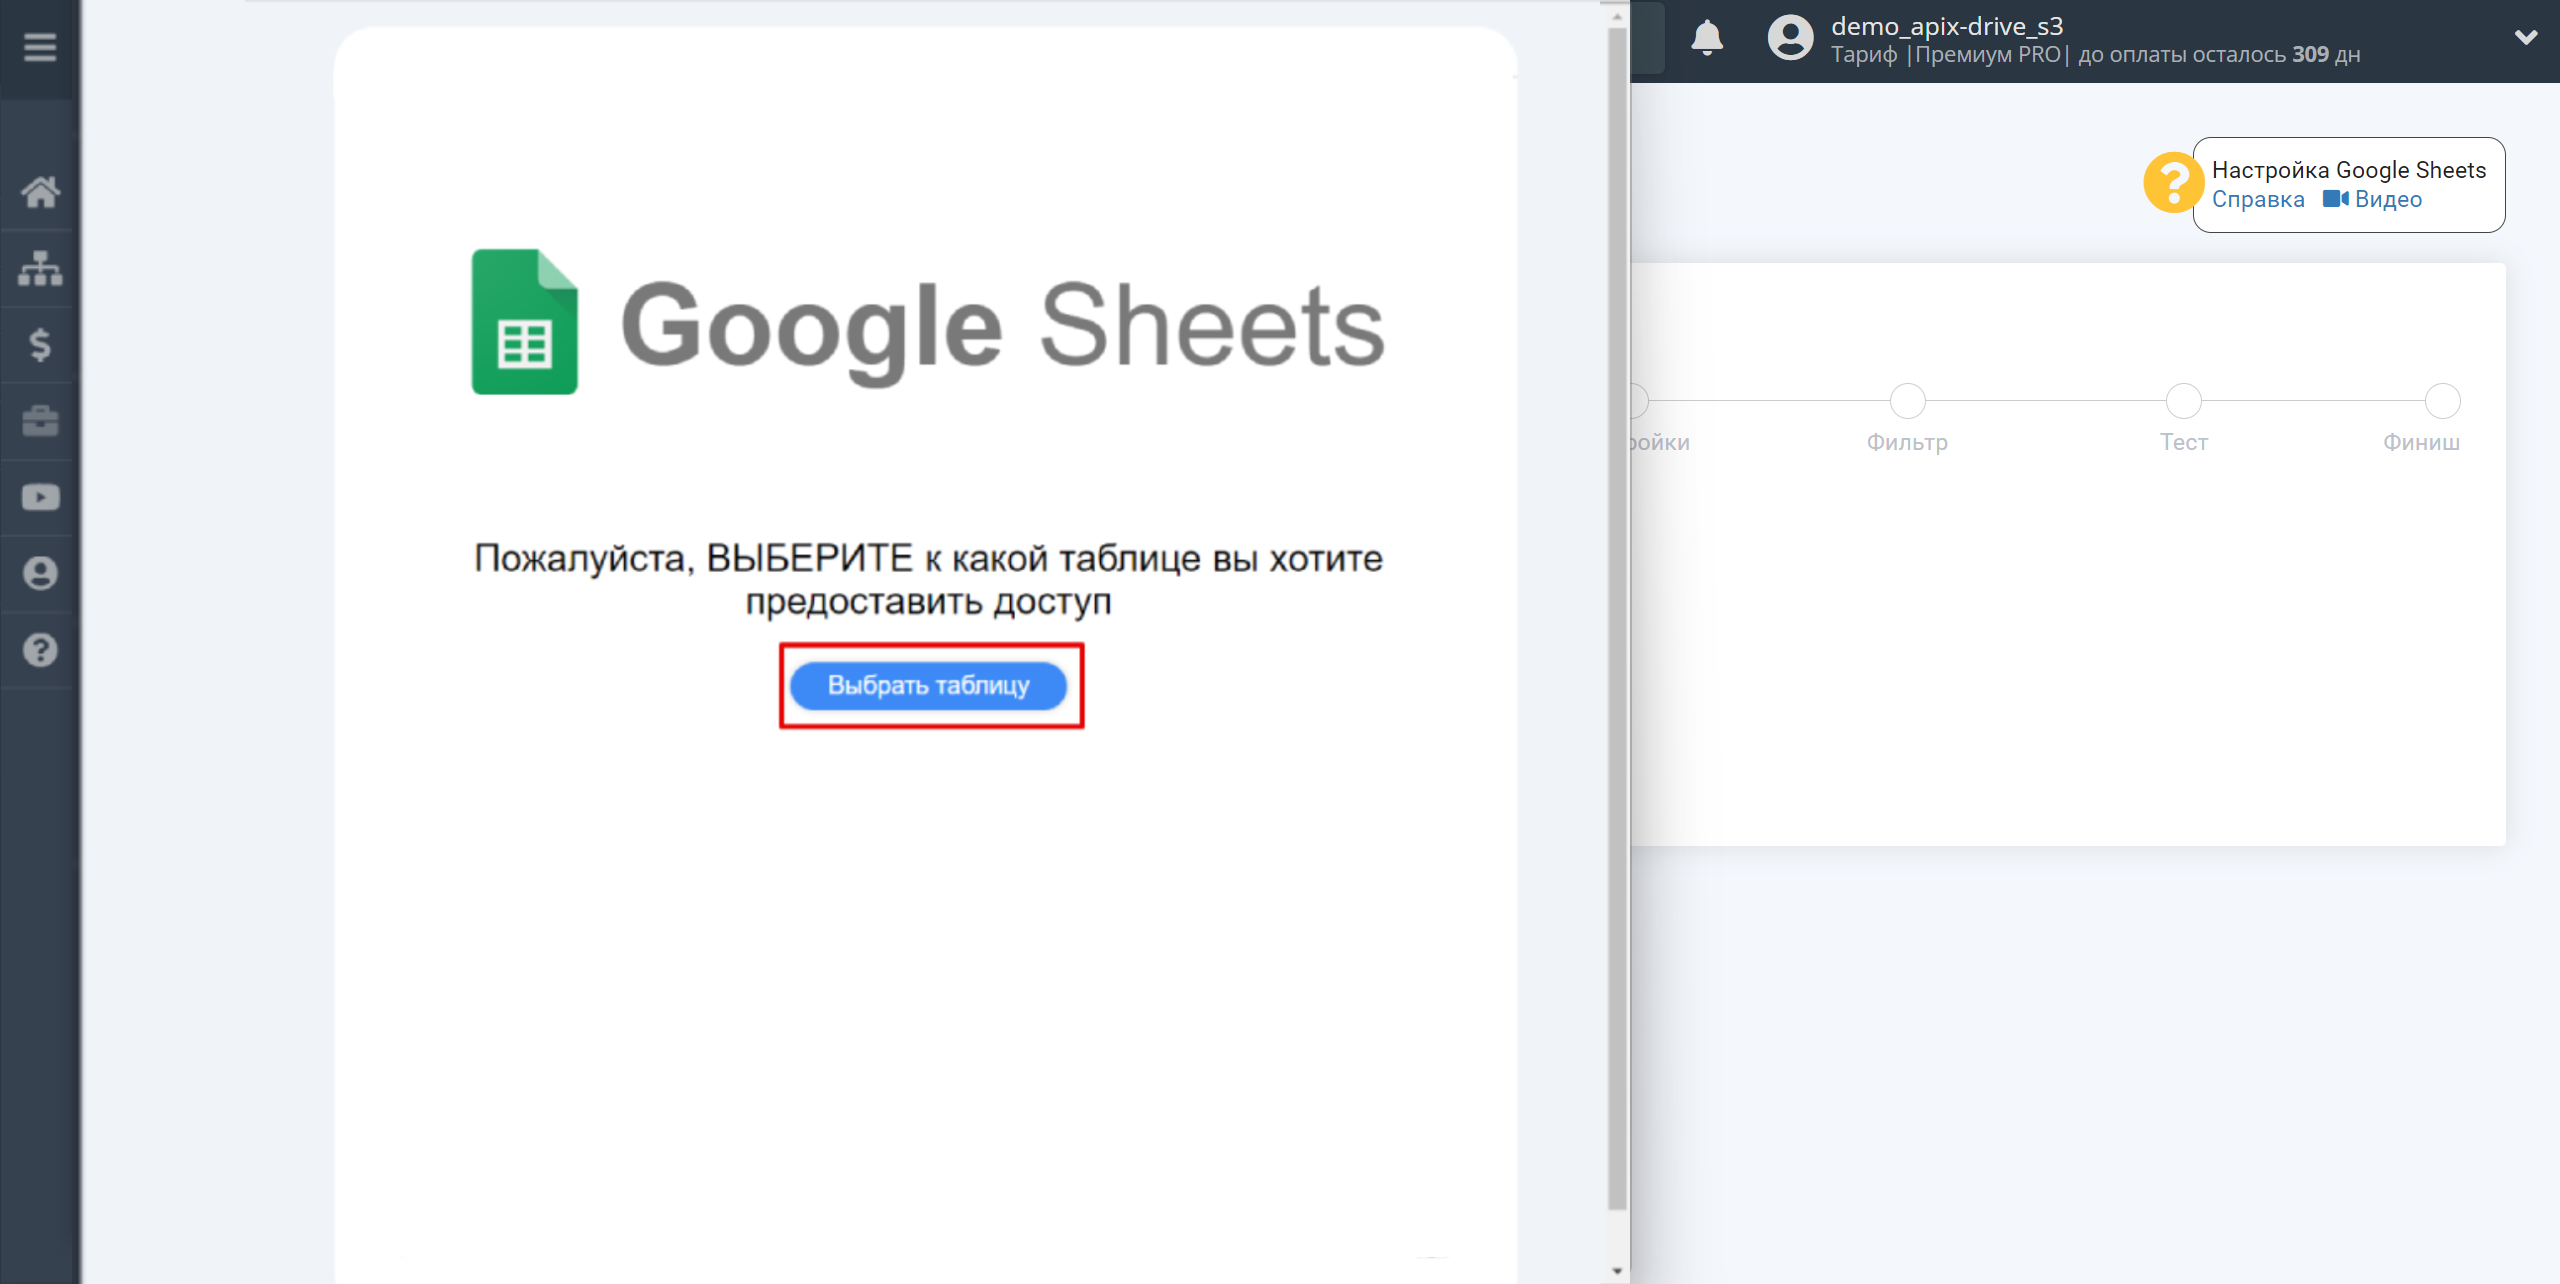 Настройка Поиска Контакта Snovio в Google Sheets | Подключение аккаунта Источника